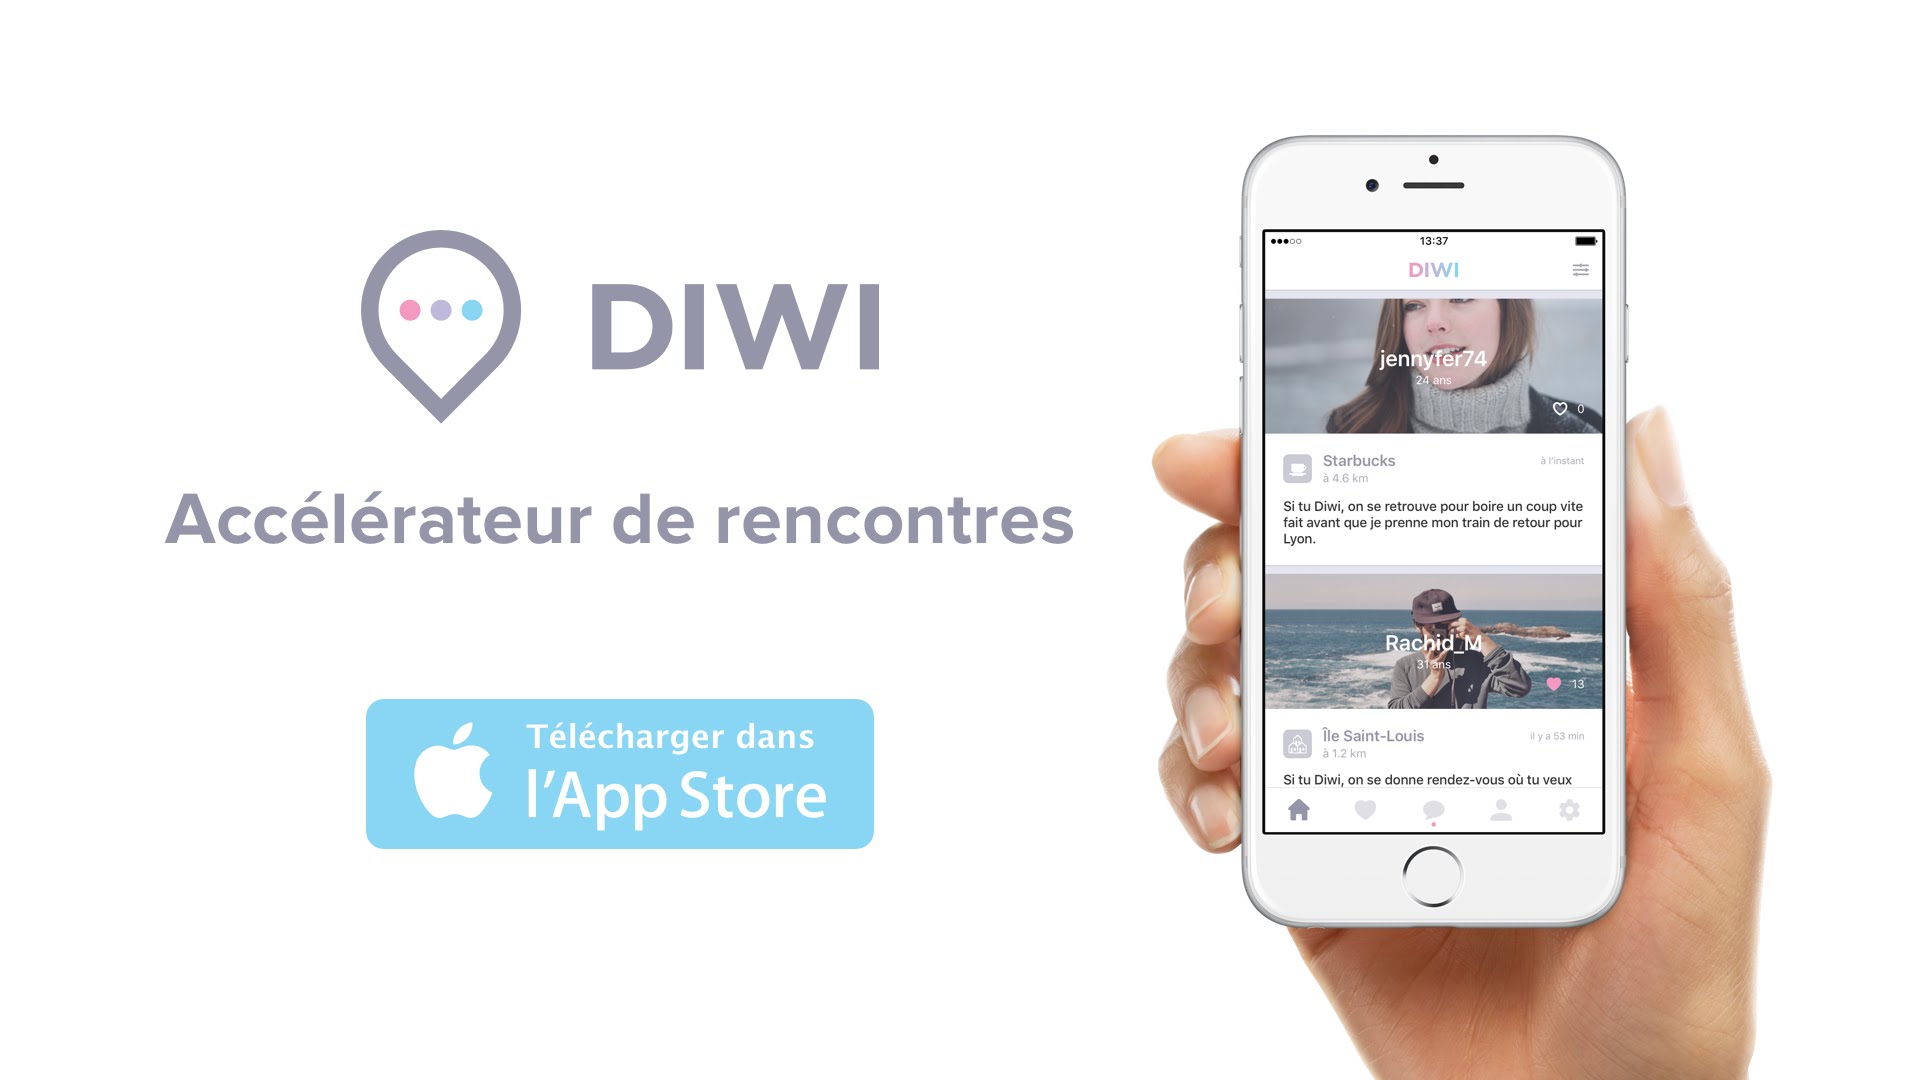 Diwi - Accélérateur de rencontres